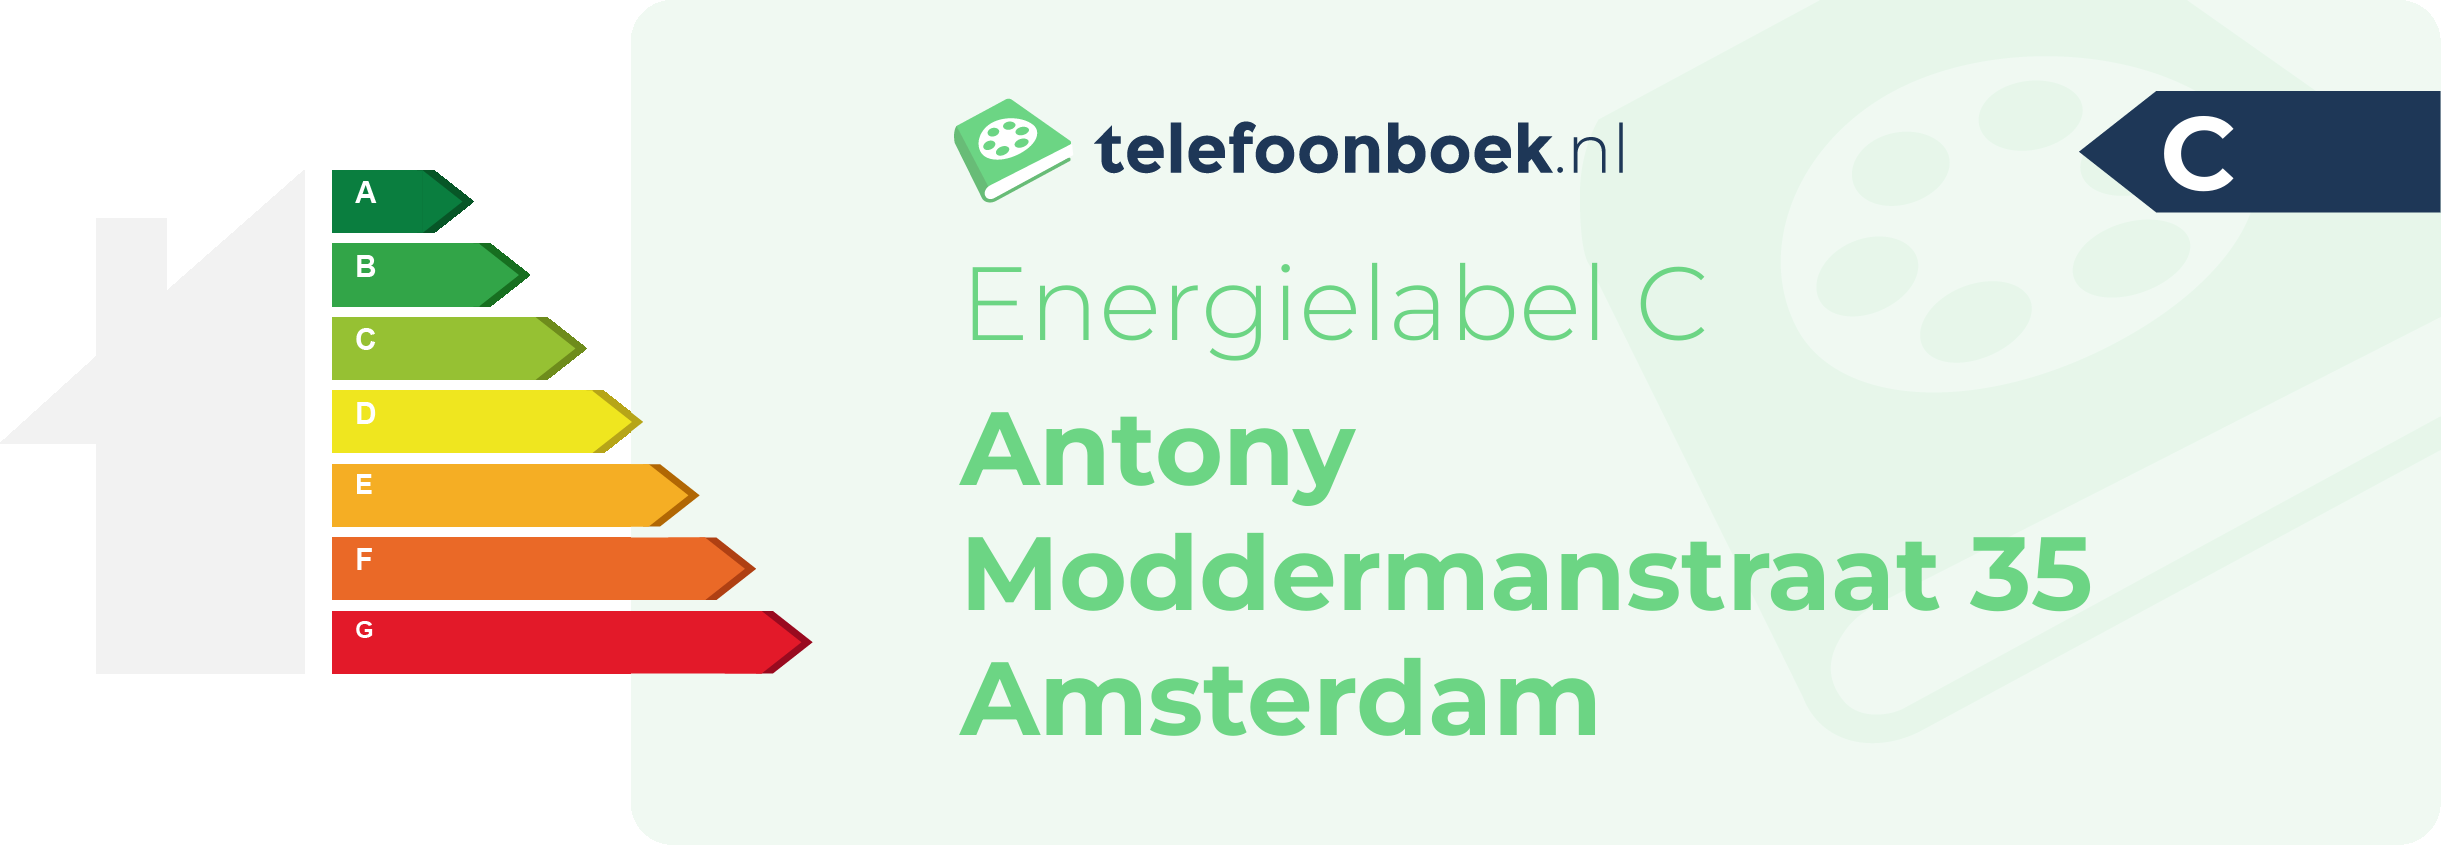 Energielabel Antony Moddermanstraat 35 Amsterdam